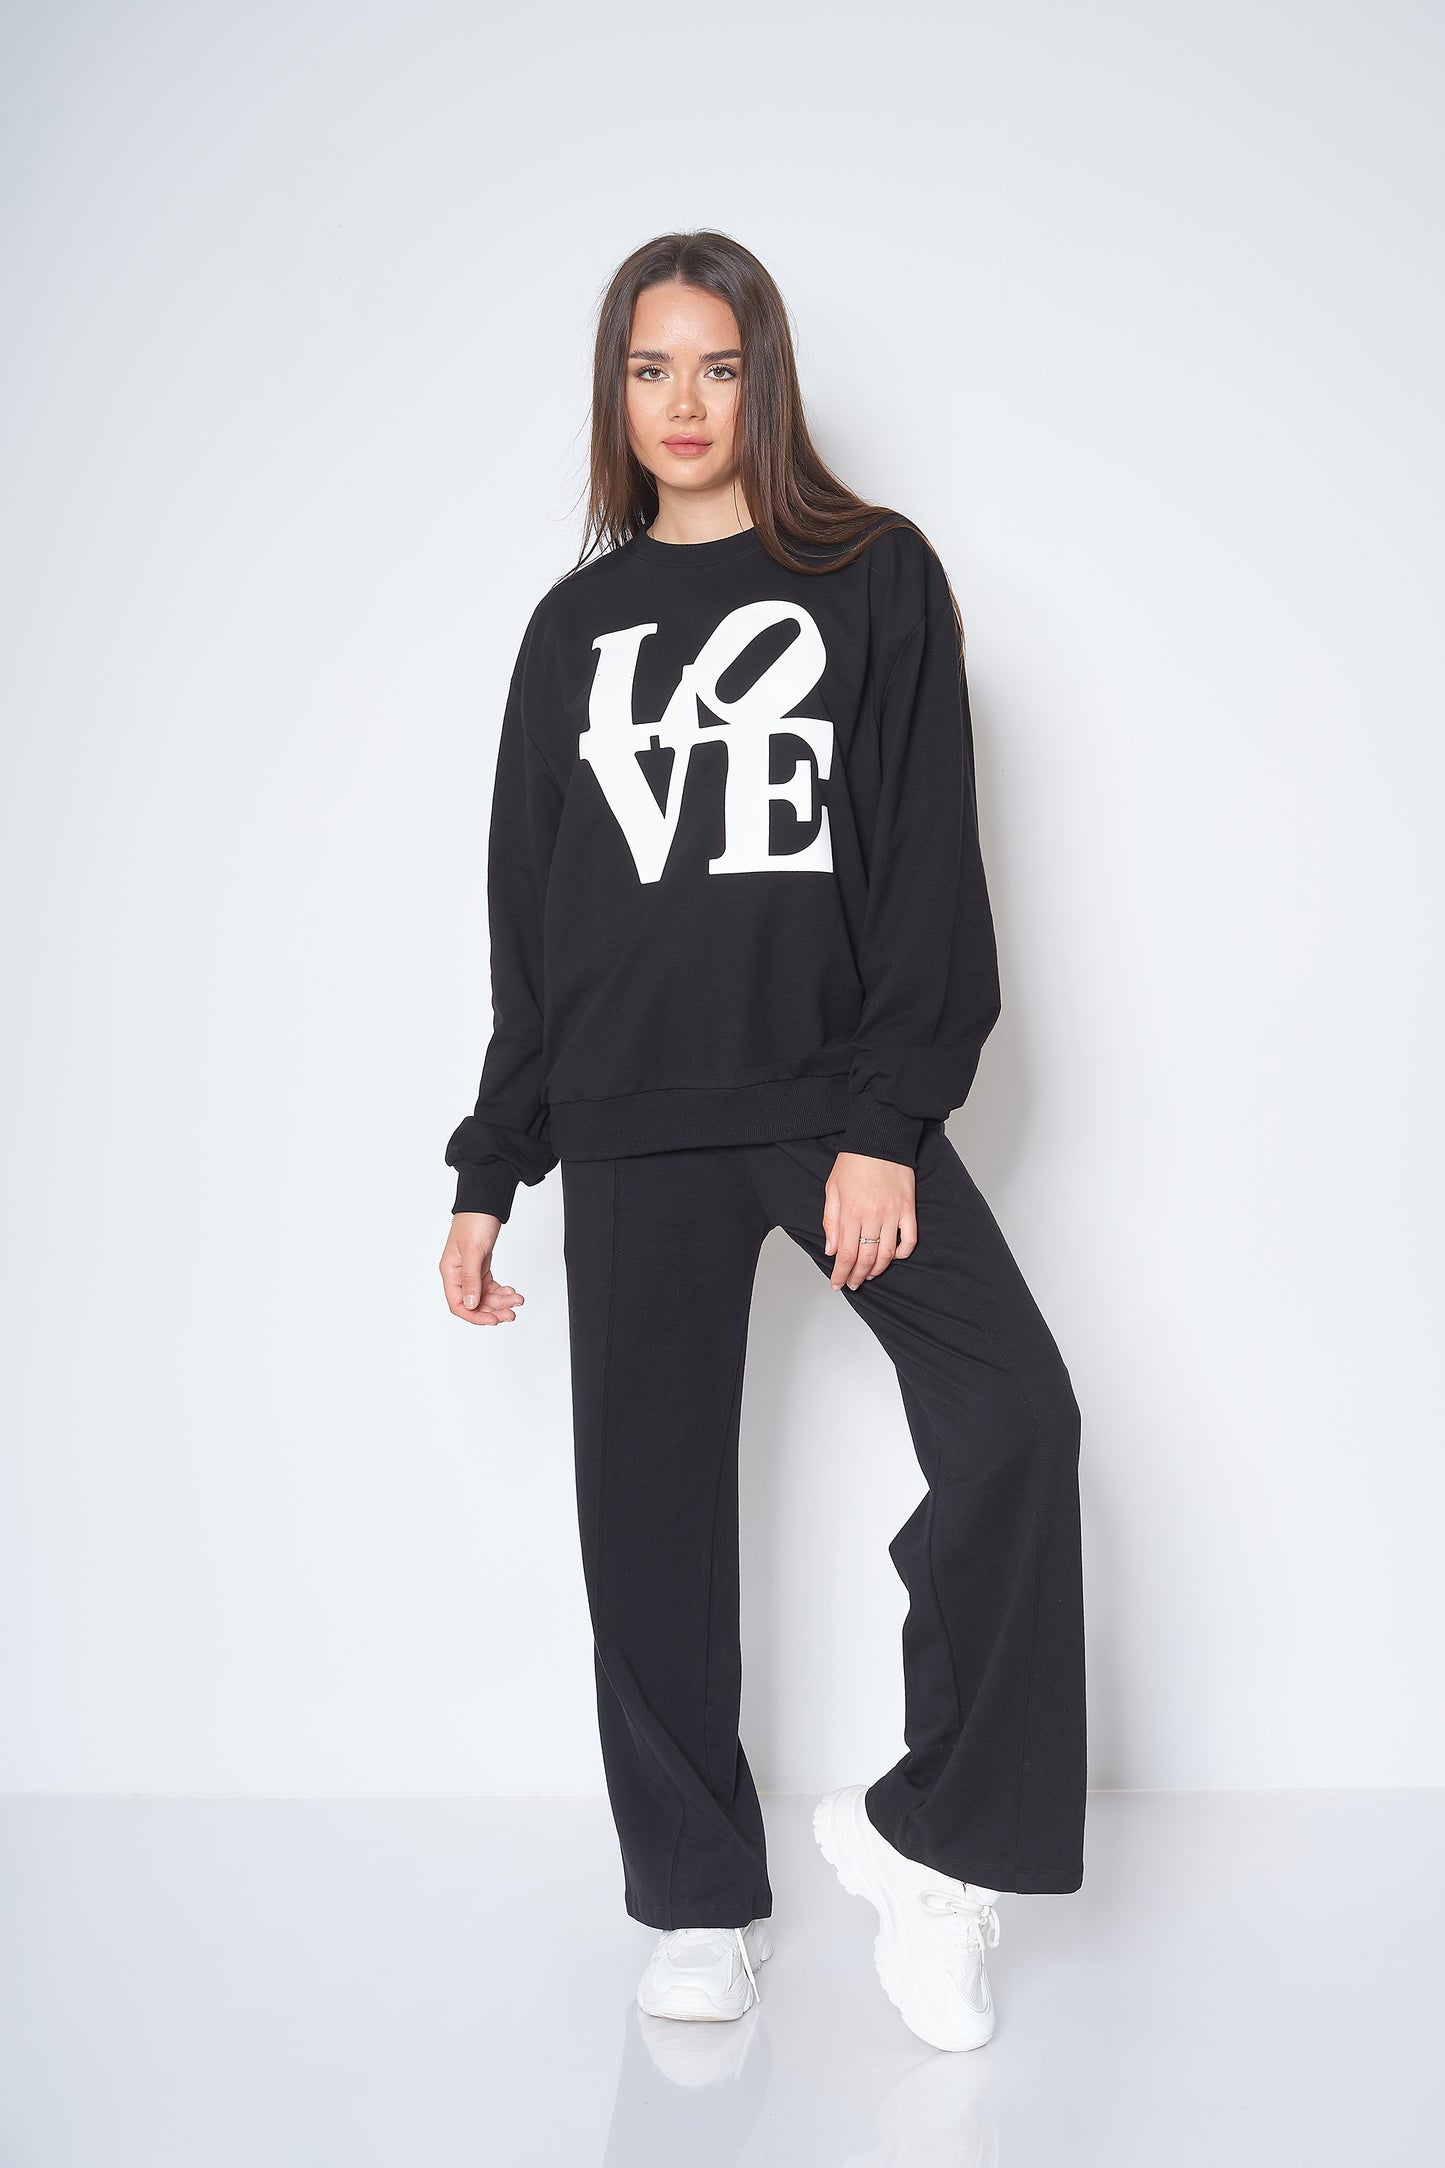 Love Printed - Sweatshirt